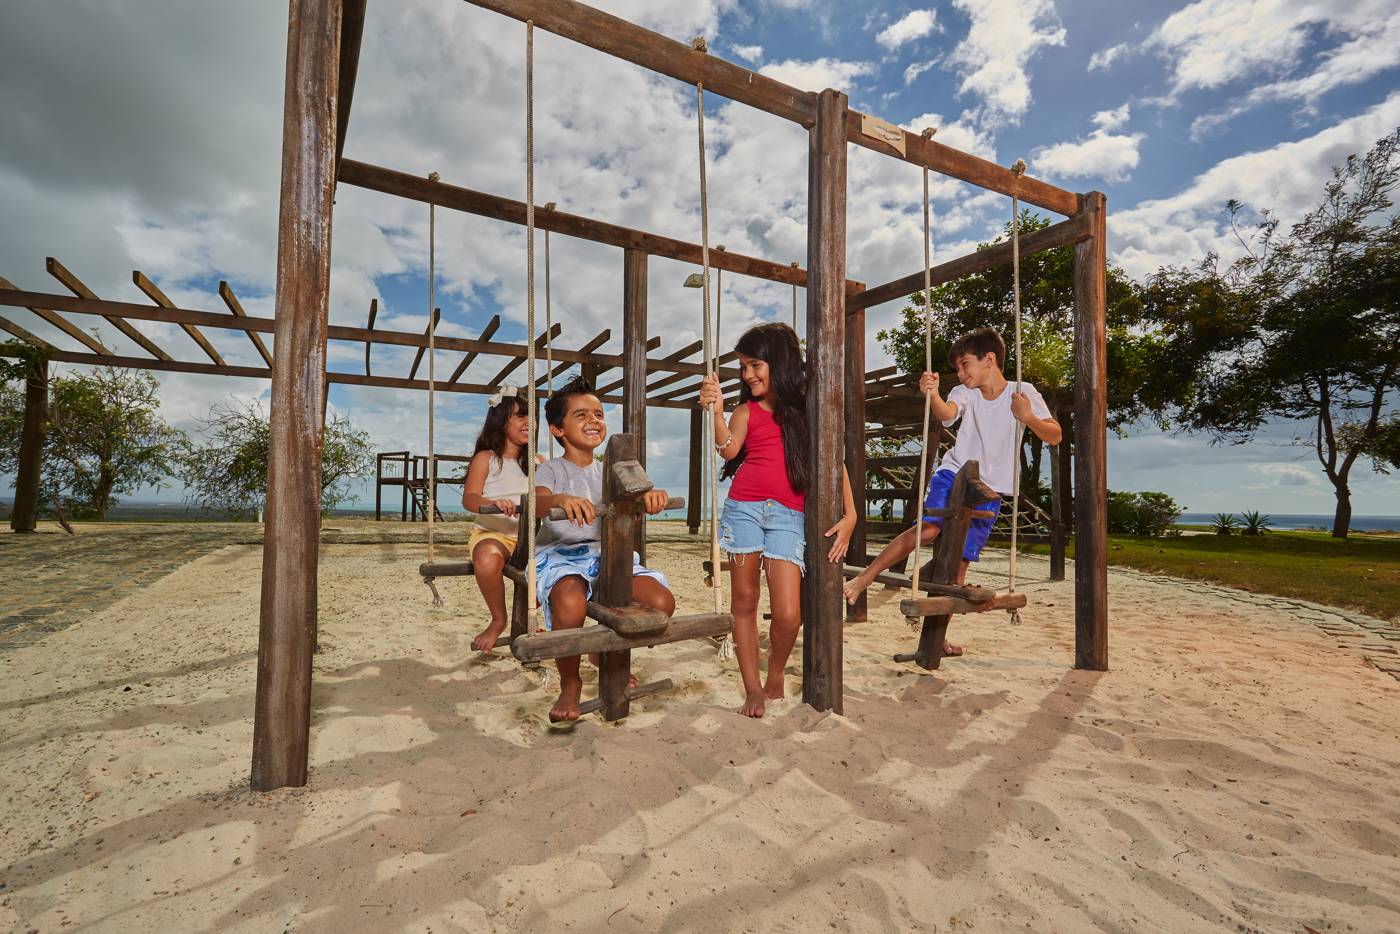 Crianças brincando no parque do loteamento fechado AltaVistta, na Barra de São Miguel - Alagoas